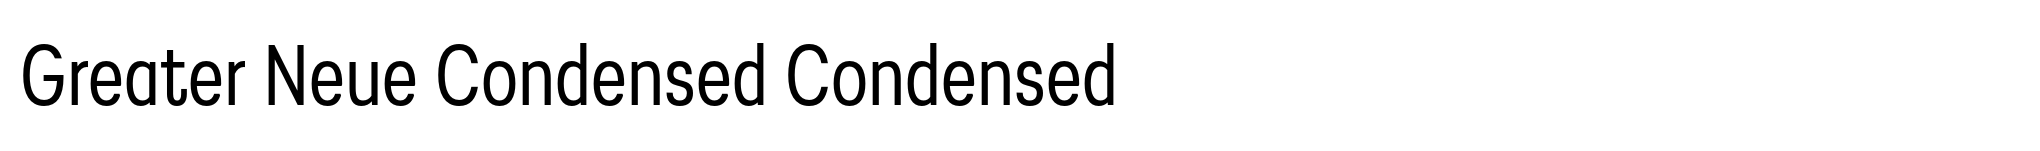 Greater Neue Condensed Condensed image